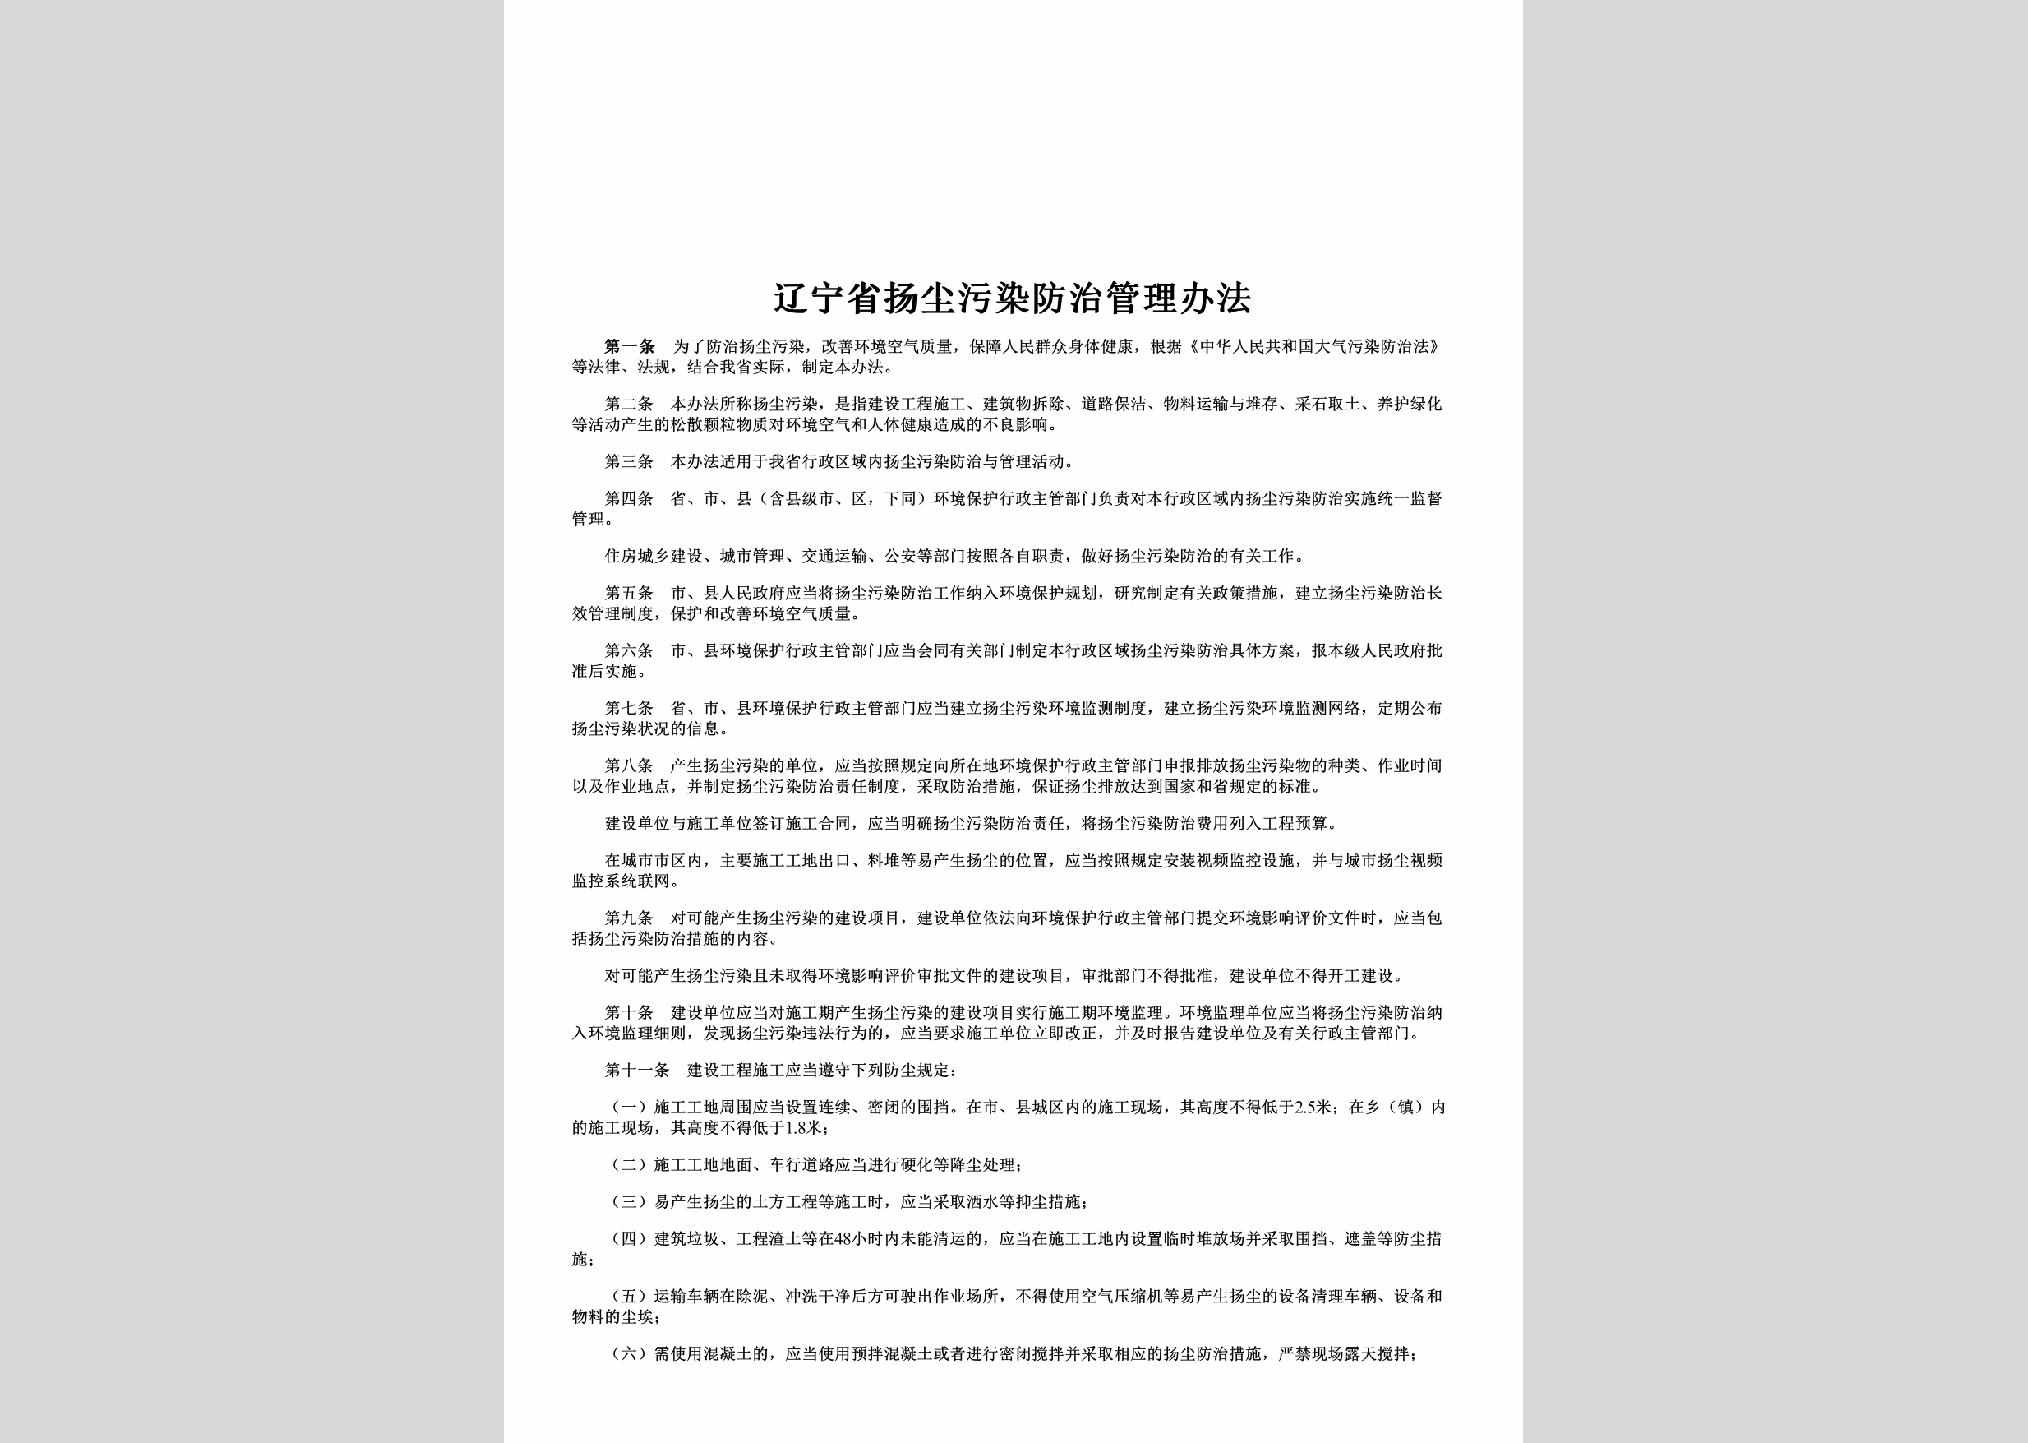 LN-YCWRFZBF-2013：辽宁省扬尘污染防治管理办法